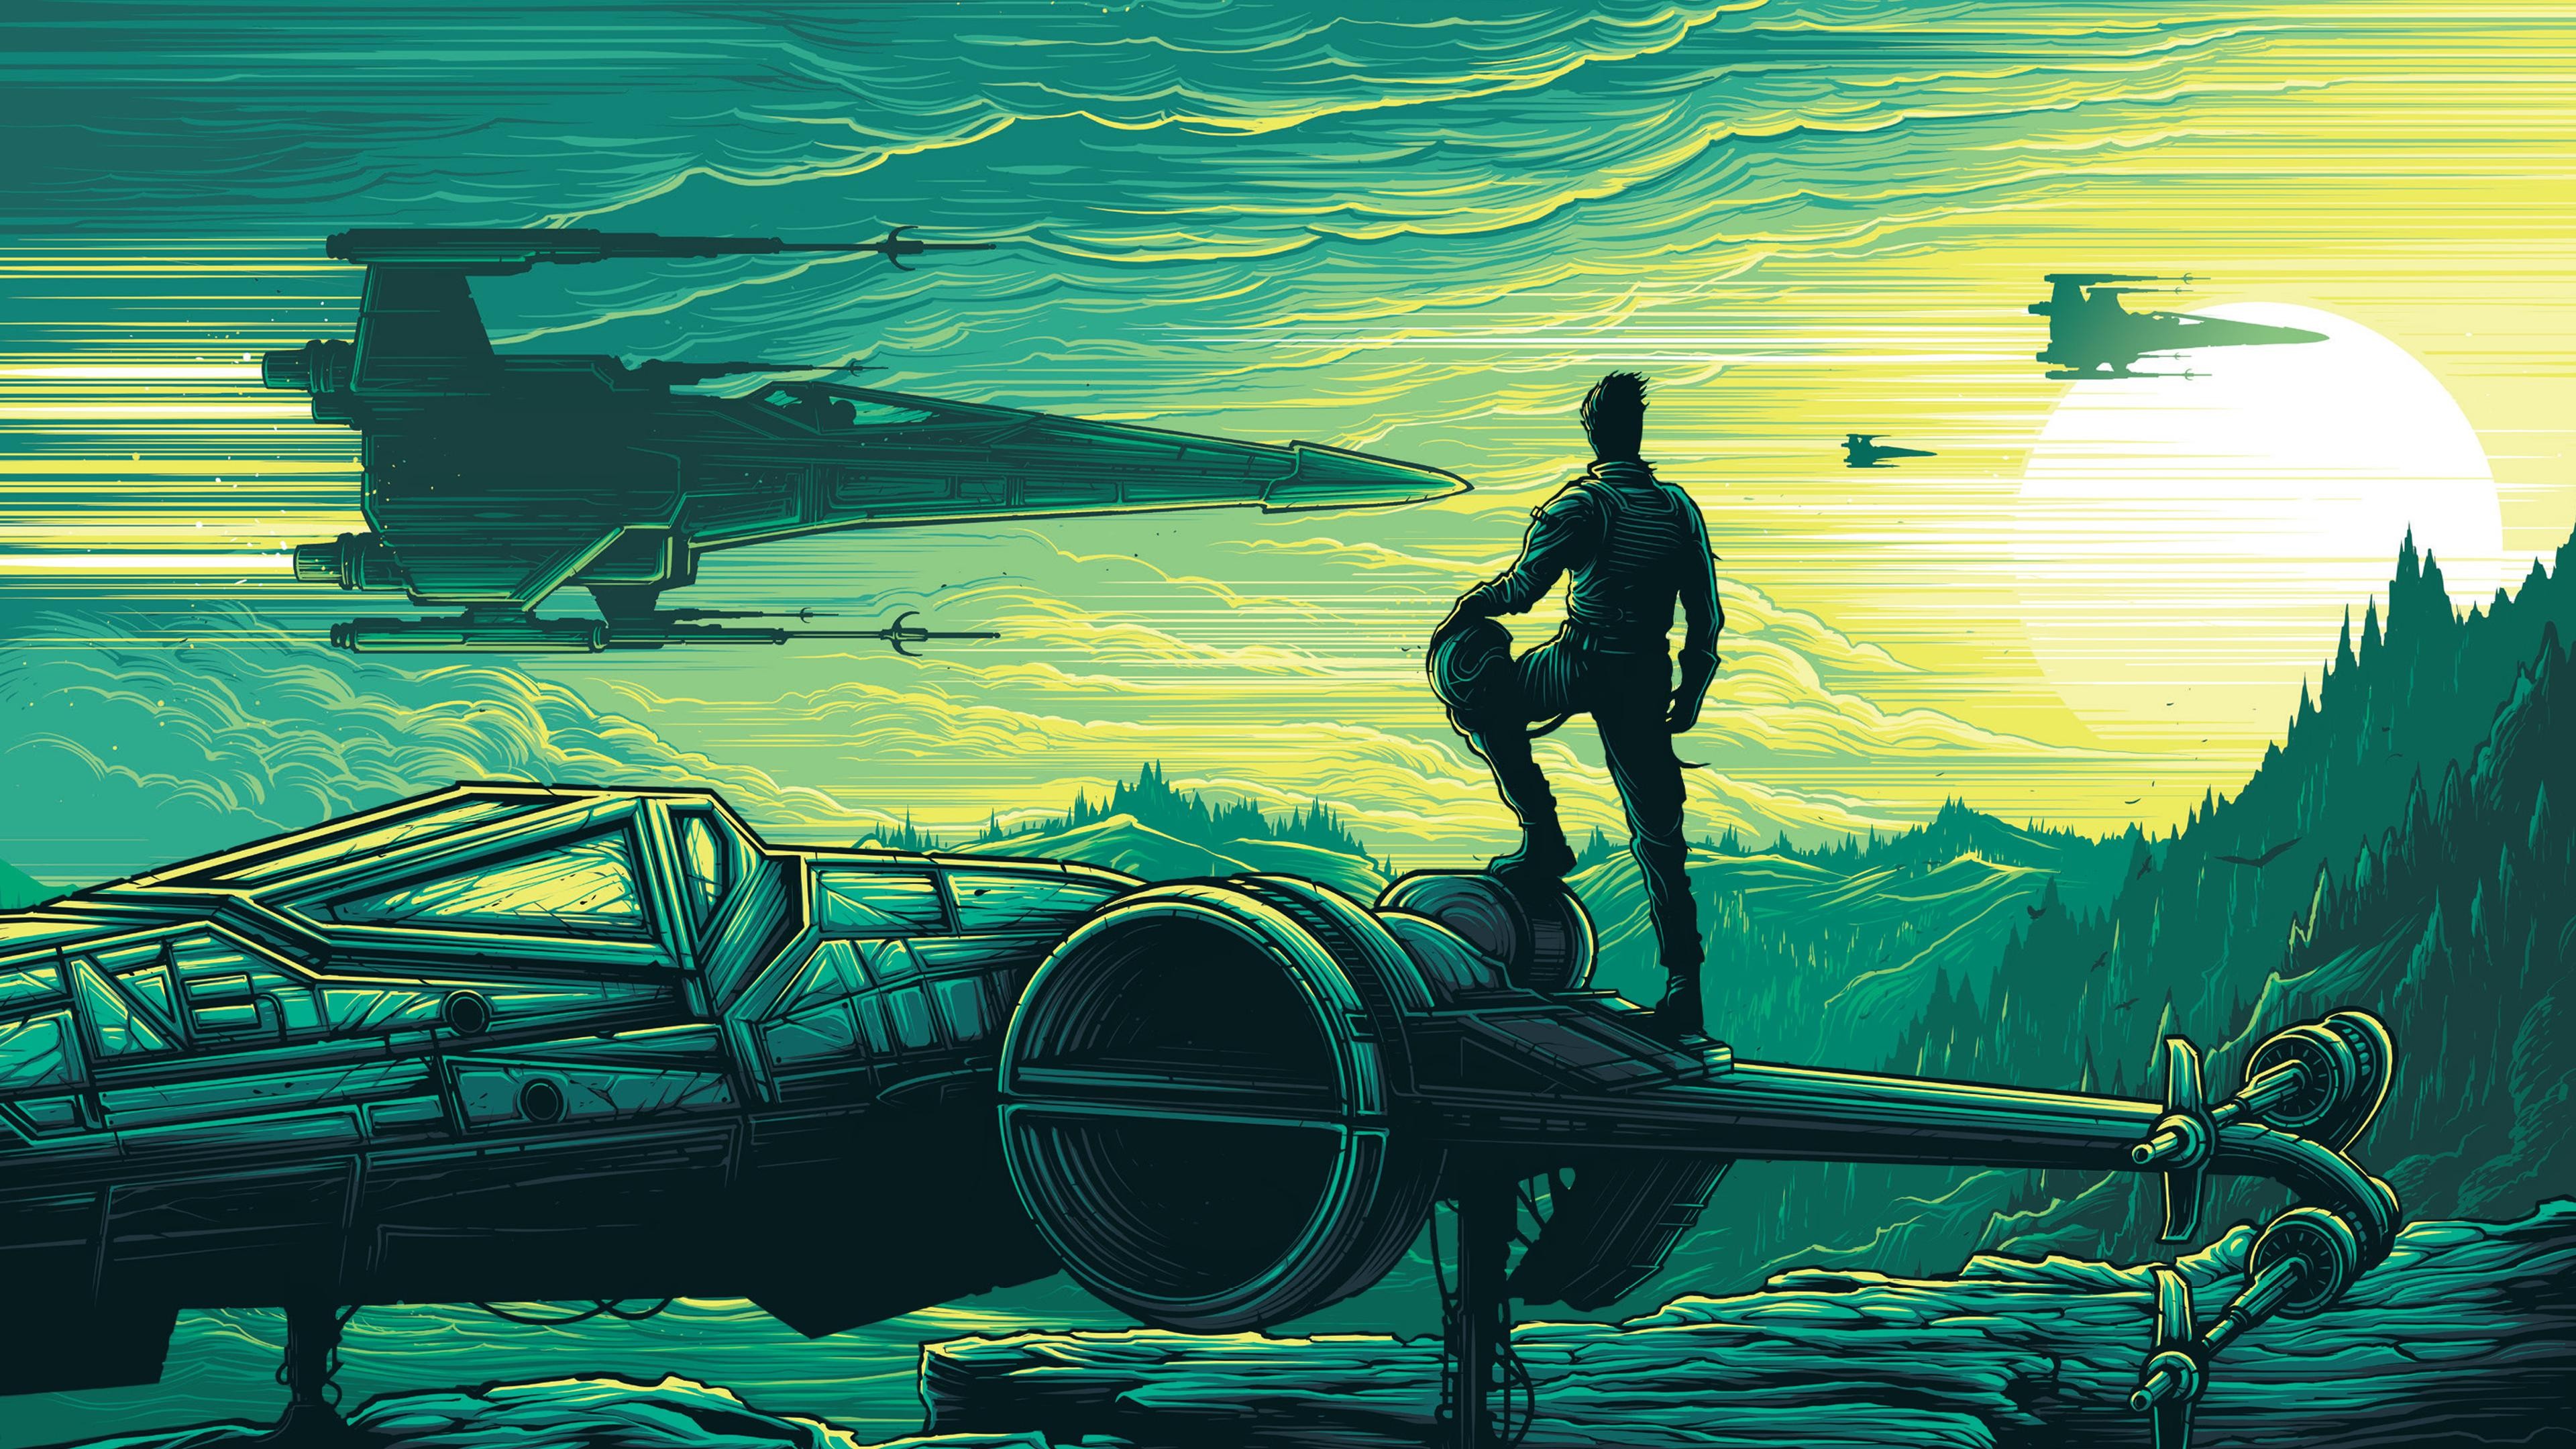 General 3840x2160 Star Wars: The Force Awakens Star Wars Dan Mumford X-wing Star Wars Ships sky science fiction artwork